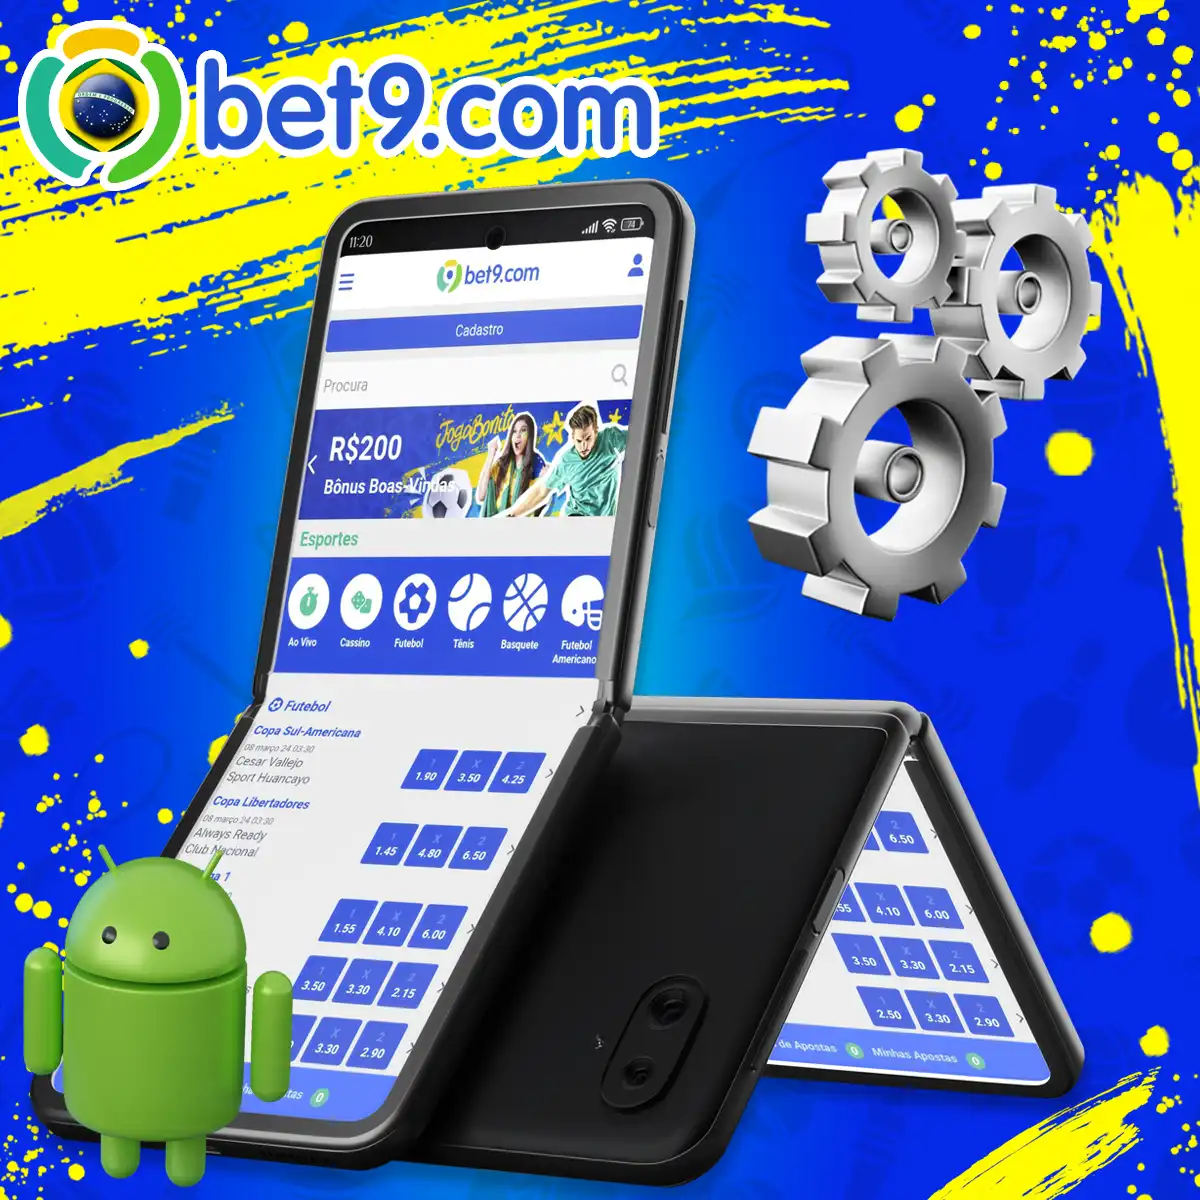 Requisitos de sistema do seu telefone Android para obter o melhor desempenho da plataforma Bet9.